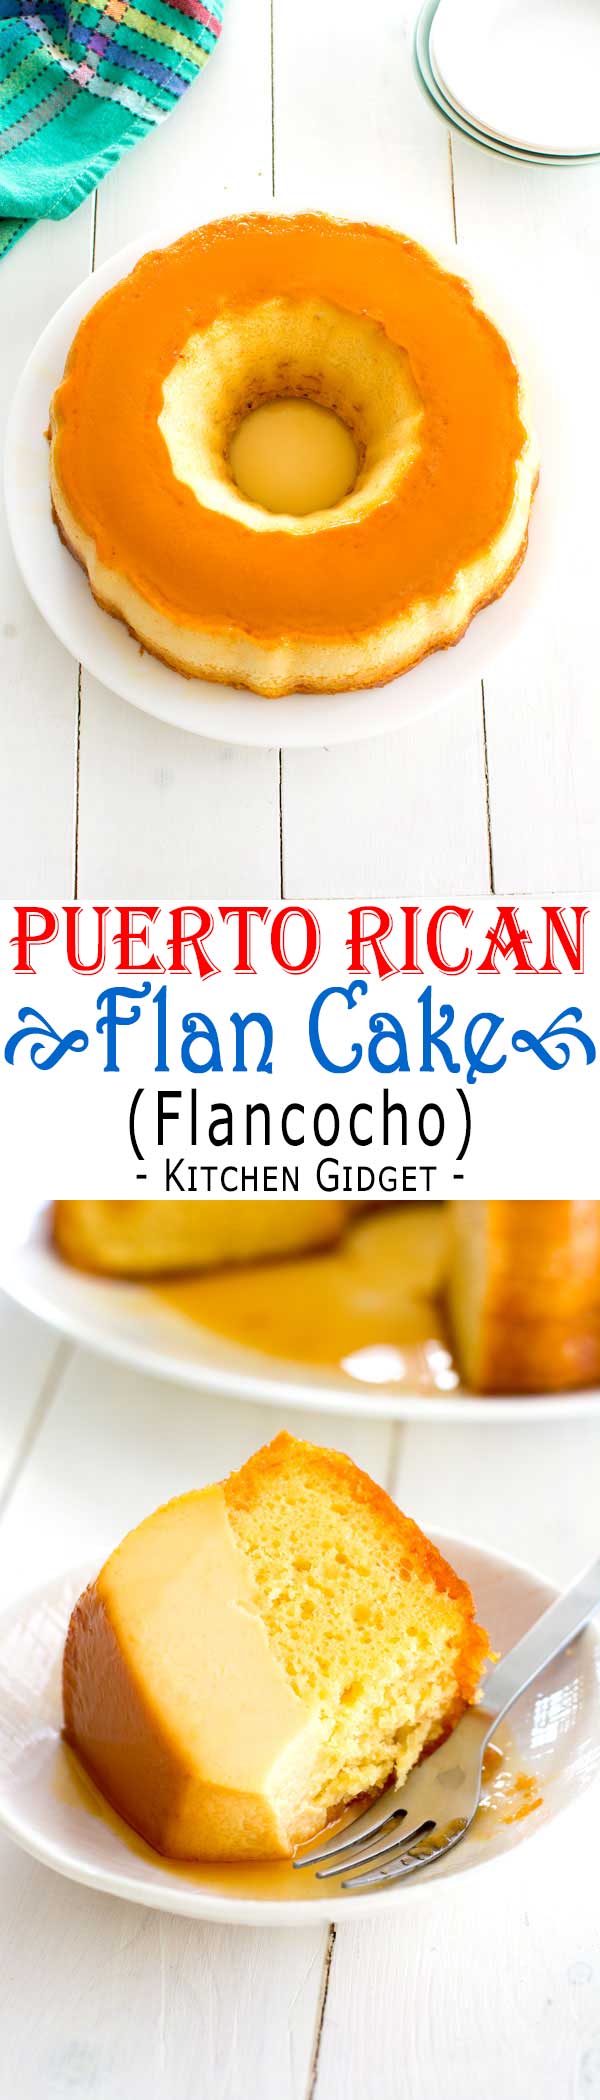 Puerto Rican Flancocho - easy flan cake recipe! #puertoricanfood #cake #recipe